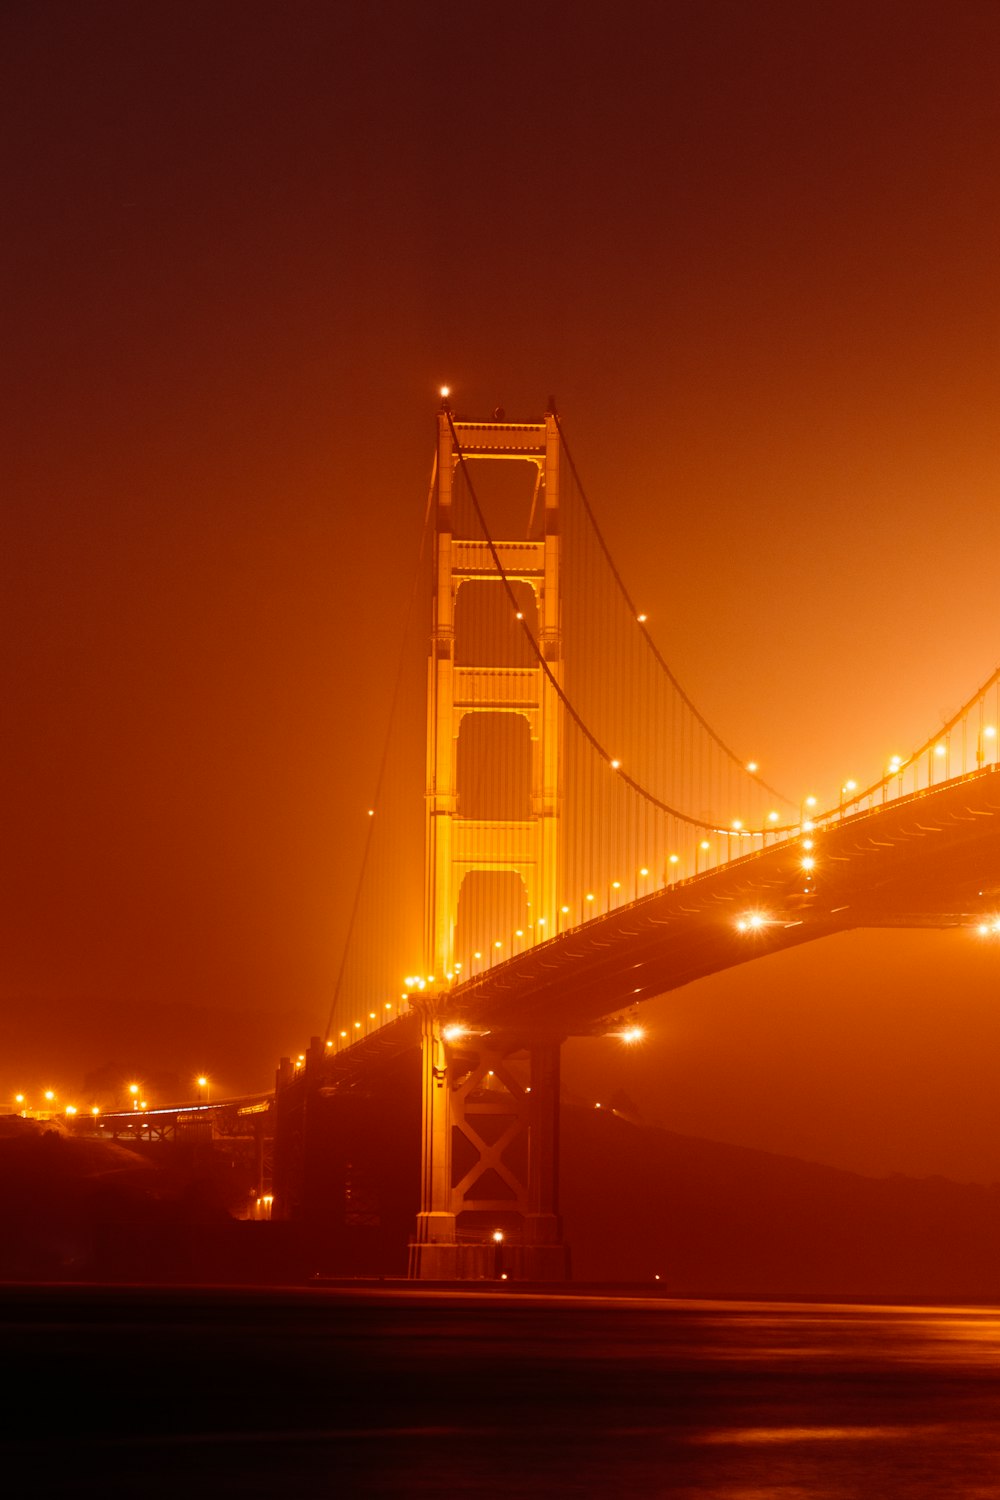 golden gate bridge during night time